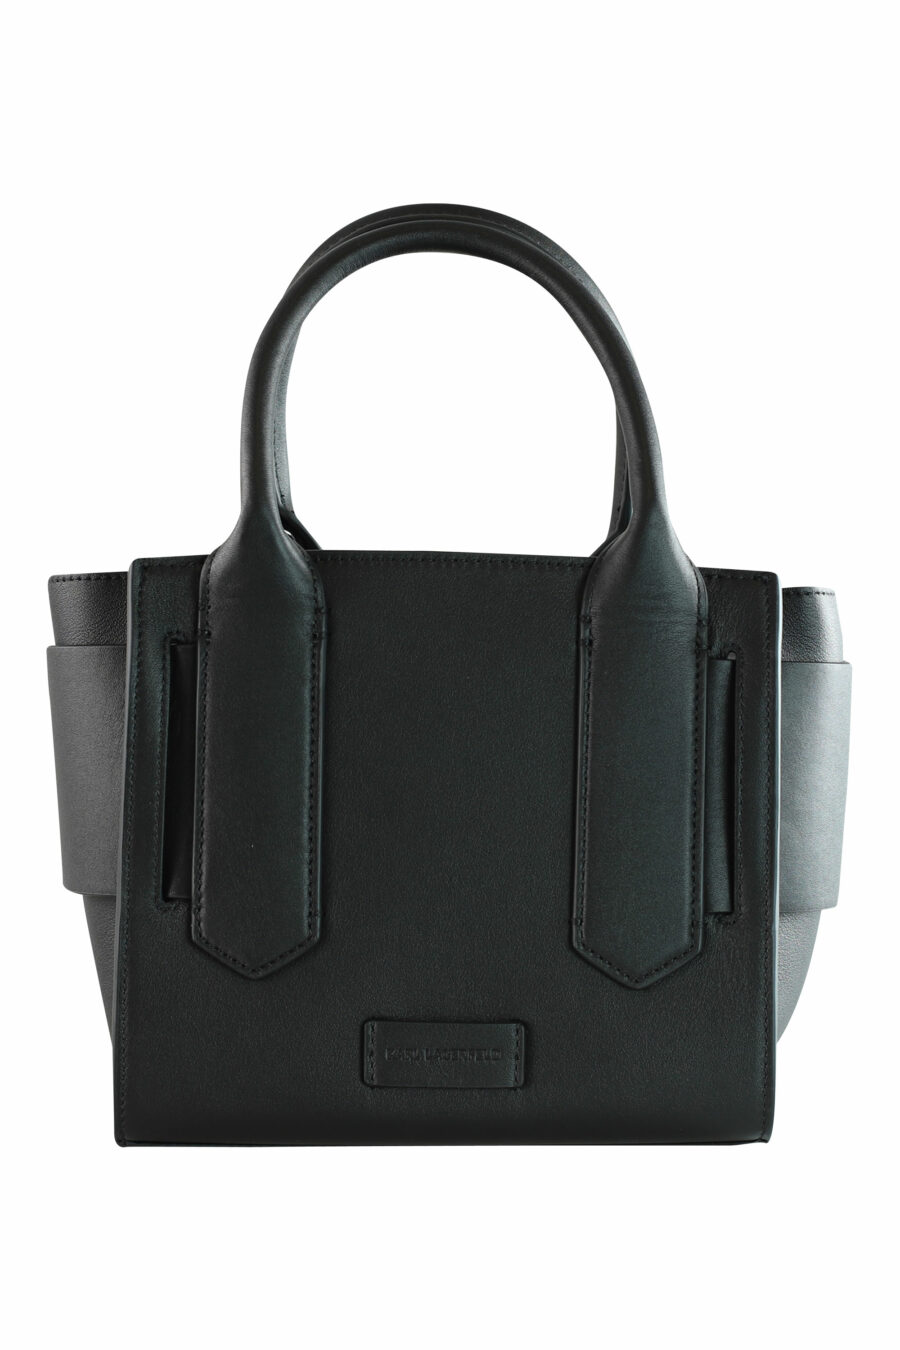 Tote bag mini black with "k/disk" logo - 8720744103363 3